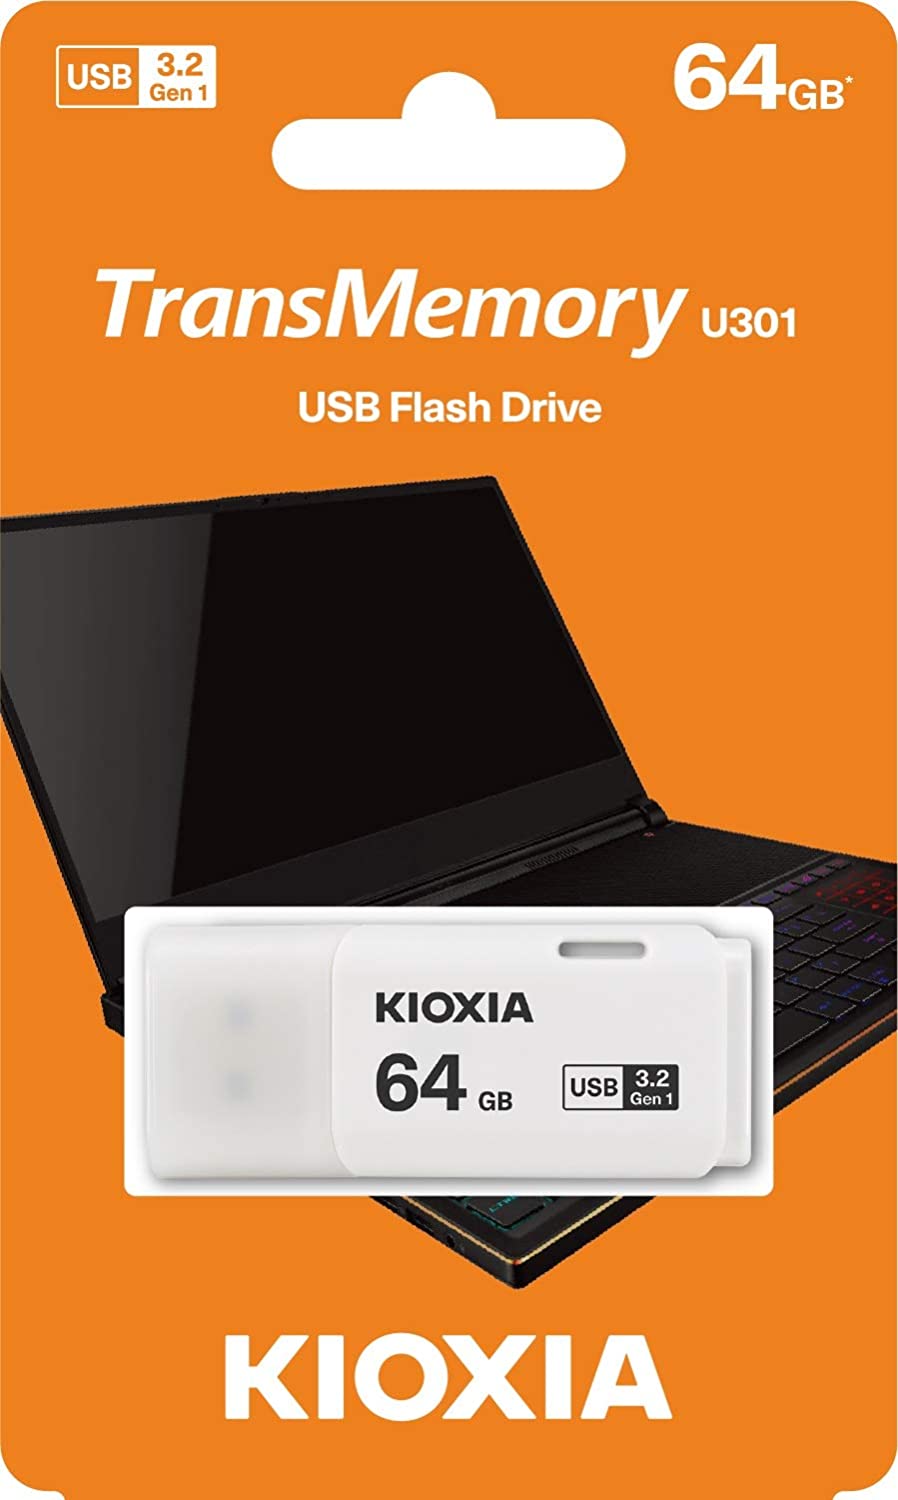 Kioxia USB-Flashdrive 64 GB USB3.0 TransMemory U301, Weiß